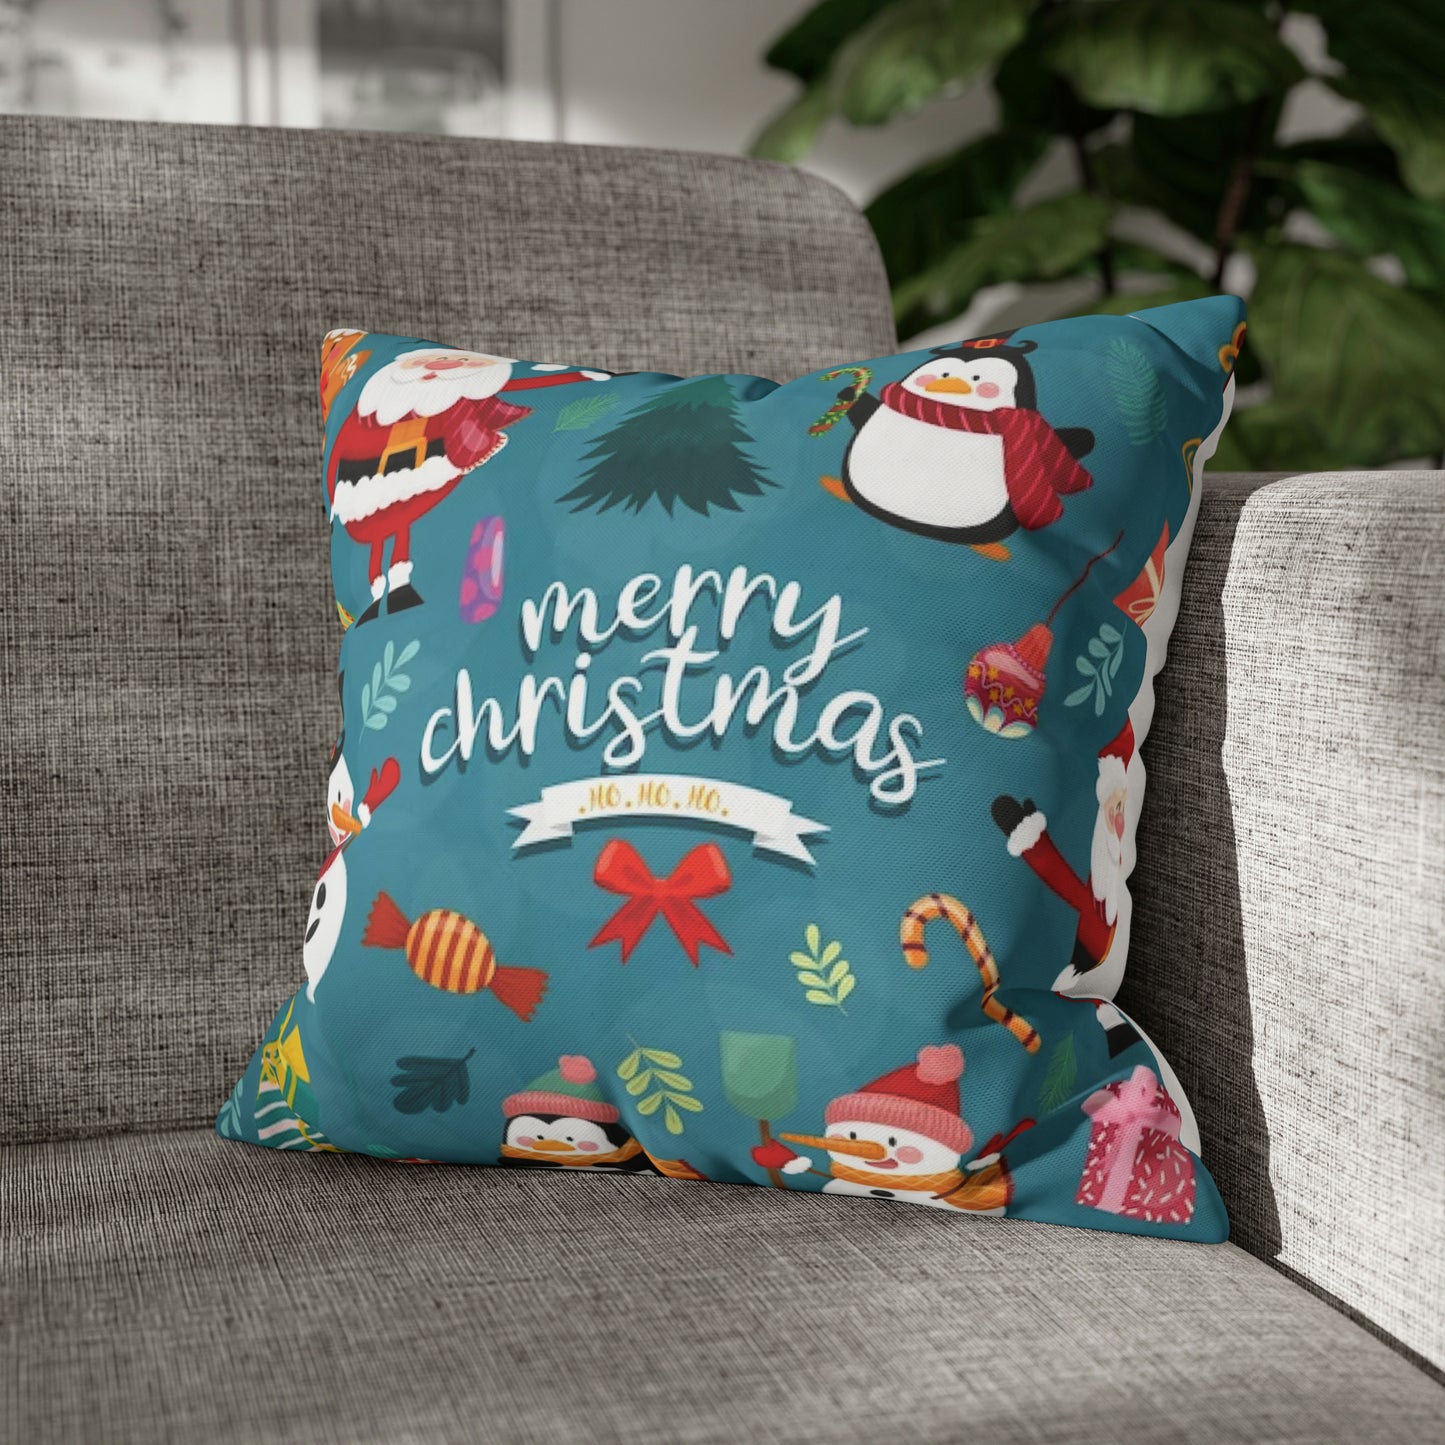 Christmas Spun Polyester Pillowcase